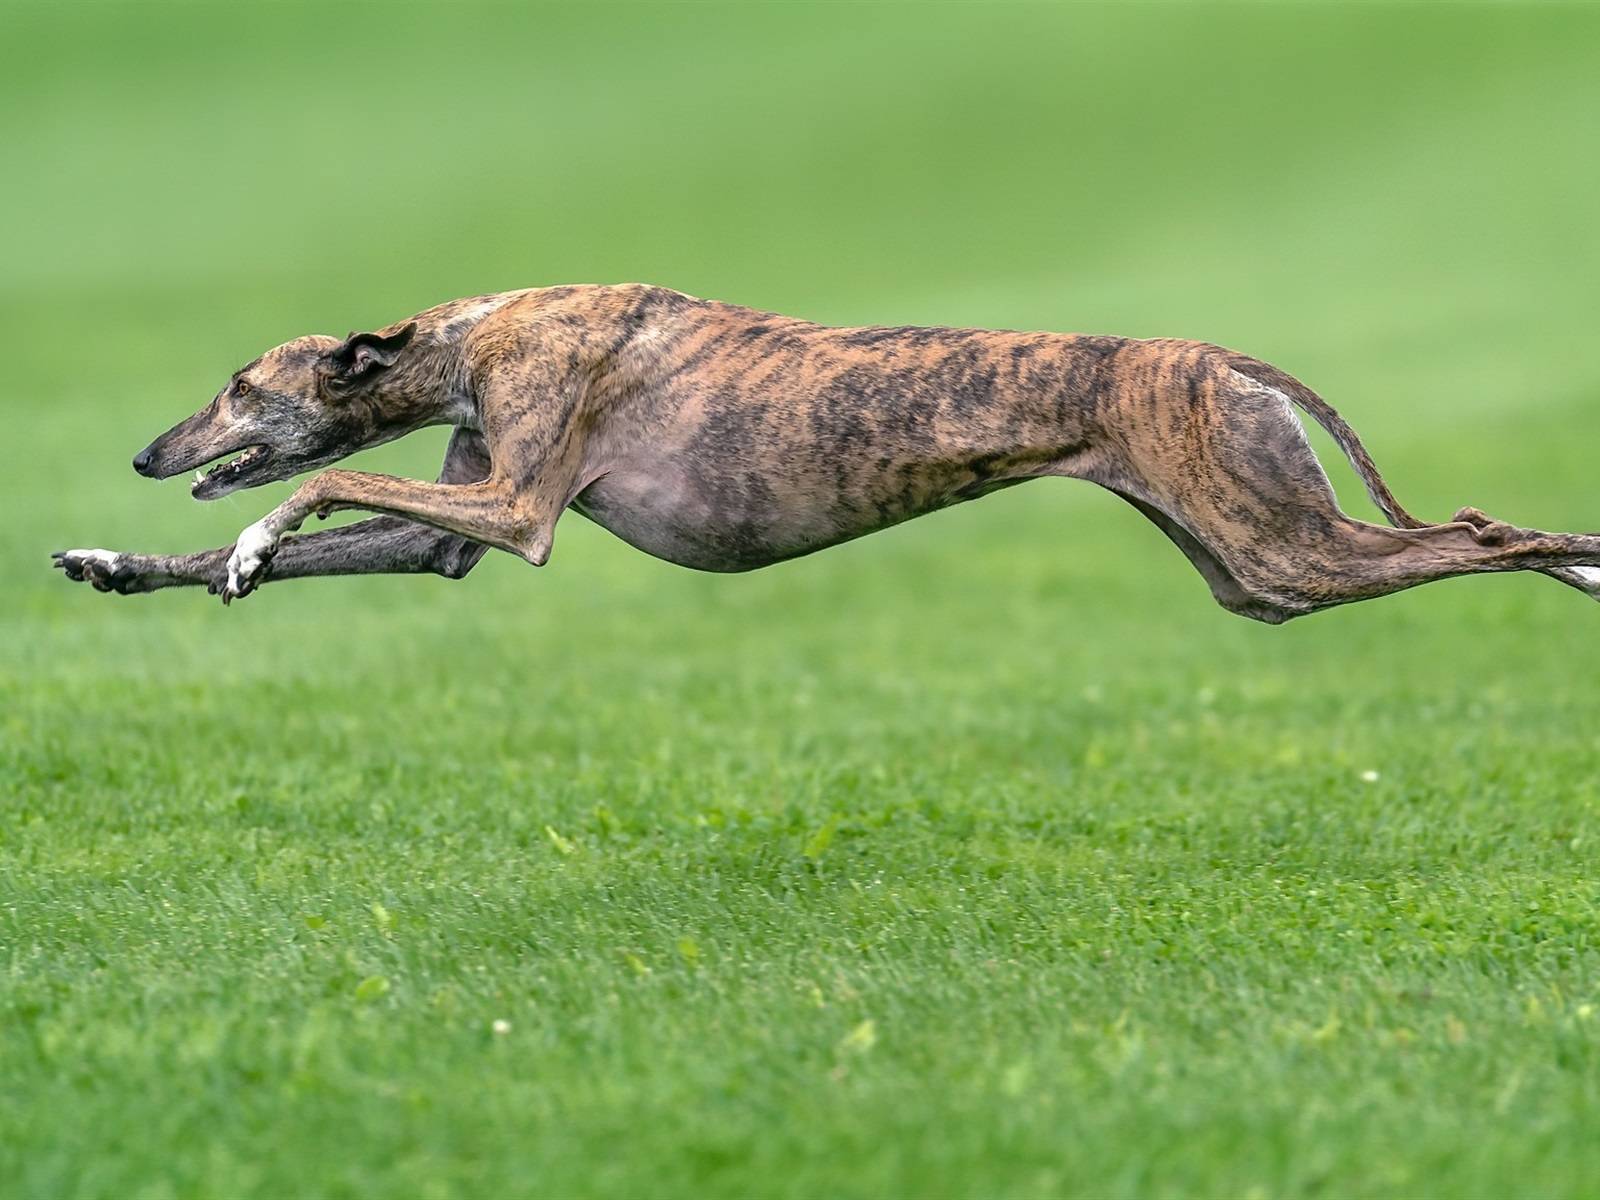 Какая порода собак считается самой быстрой: от чего зависит скорость